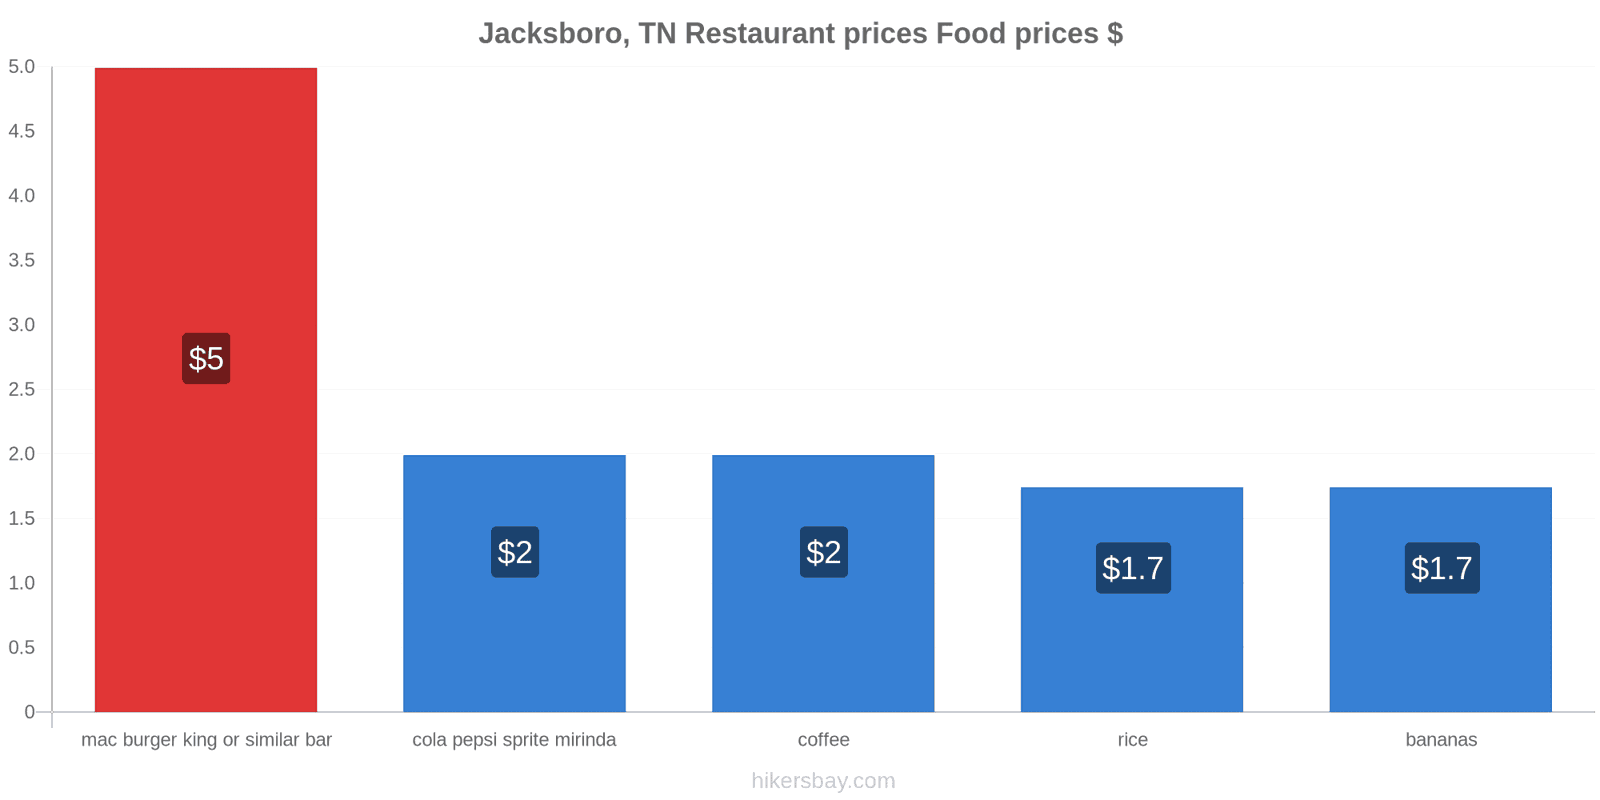 Jacksboro, TN price changes hikersbay.com